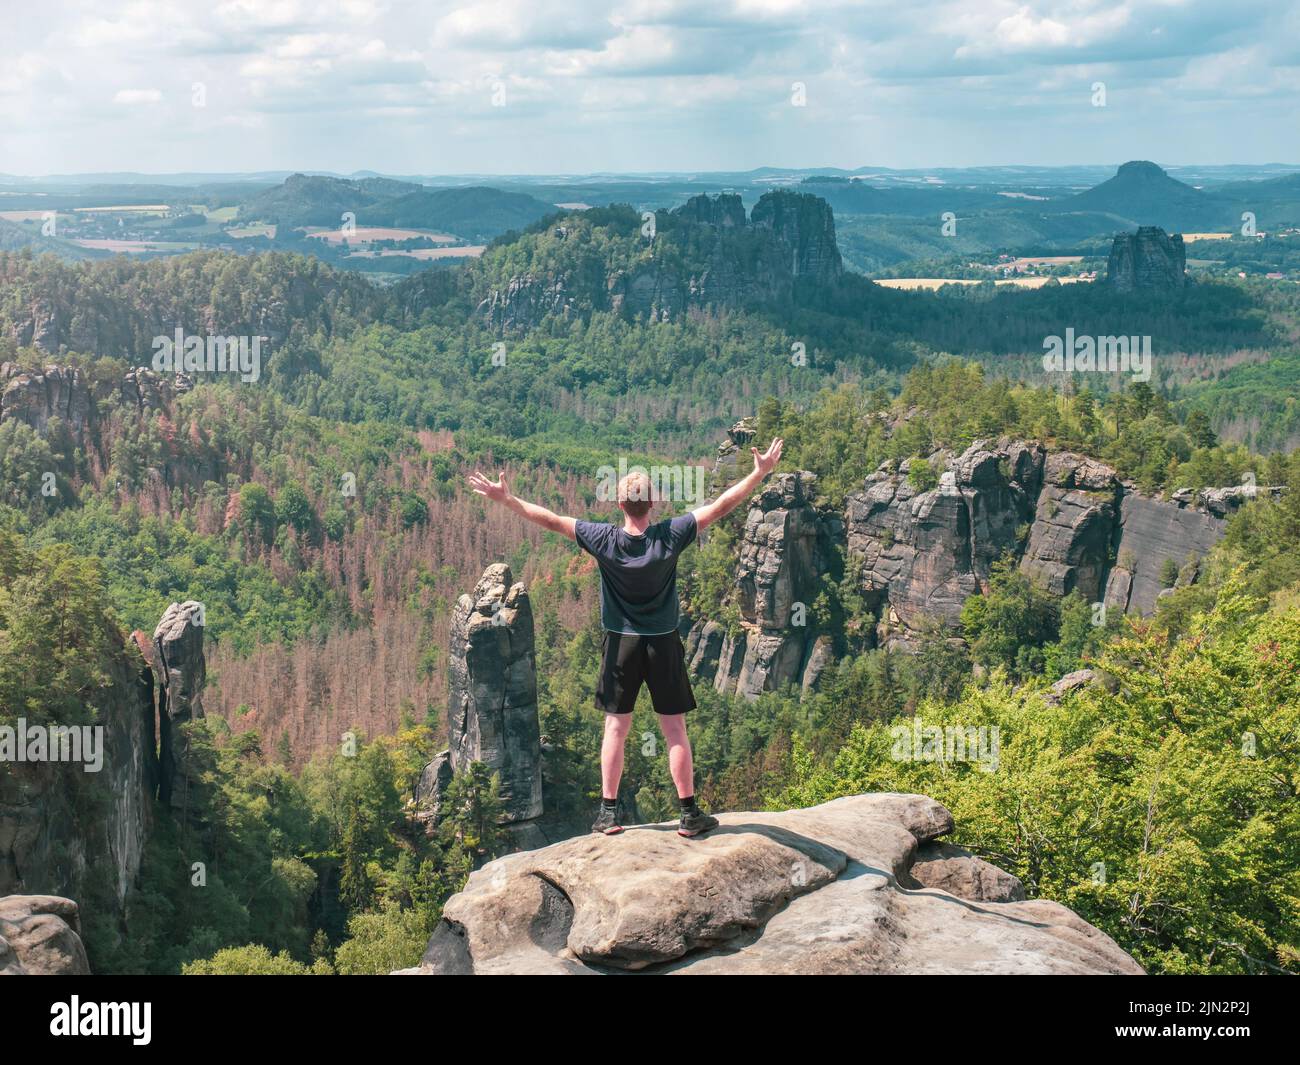 El excursionista grita saludos en el valle por debajo de la roca Carolafelsen, Grossen Dom y las montañas irregulares Schrammsteine y Falkenstein Foto de stock